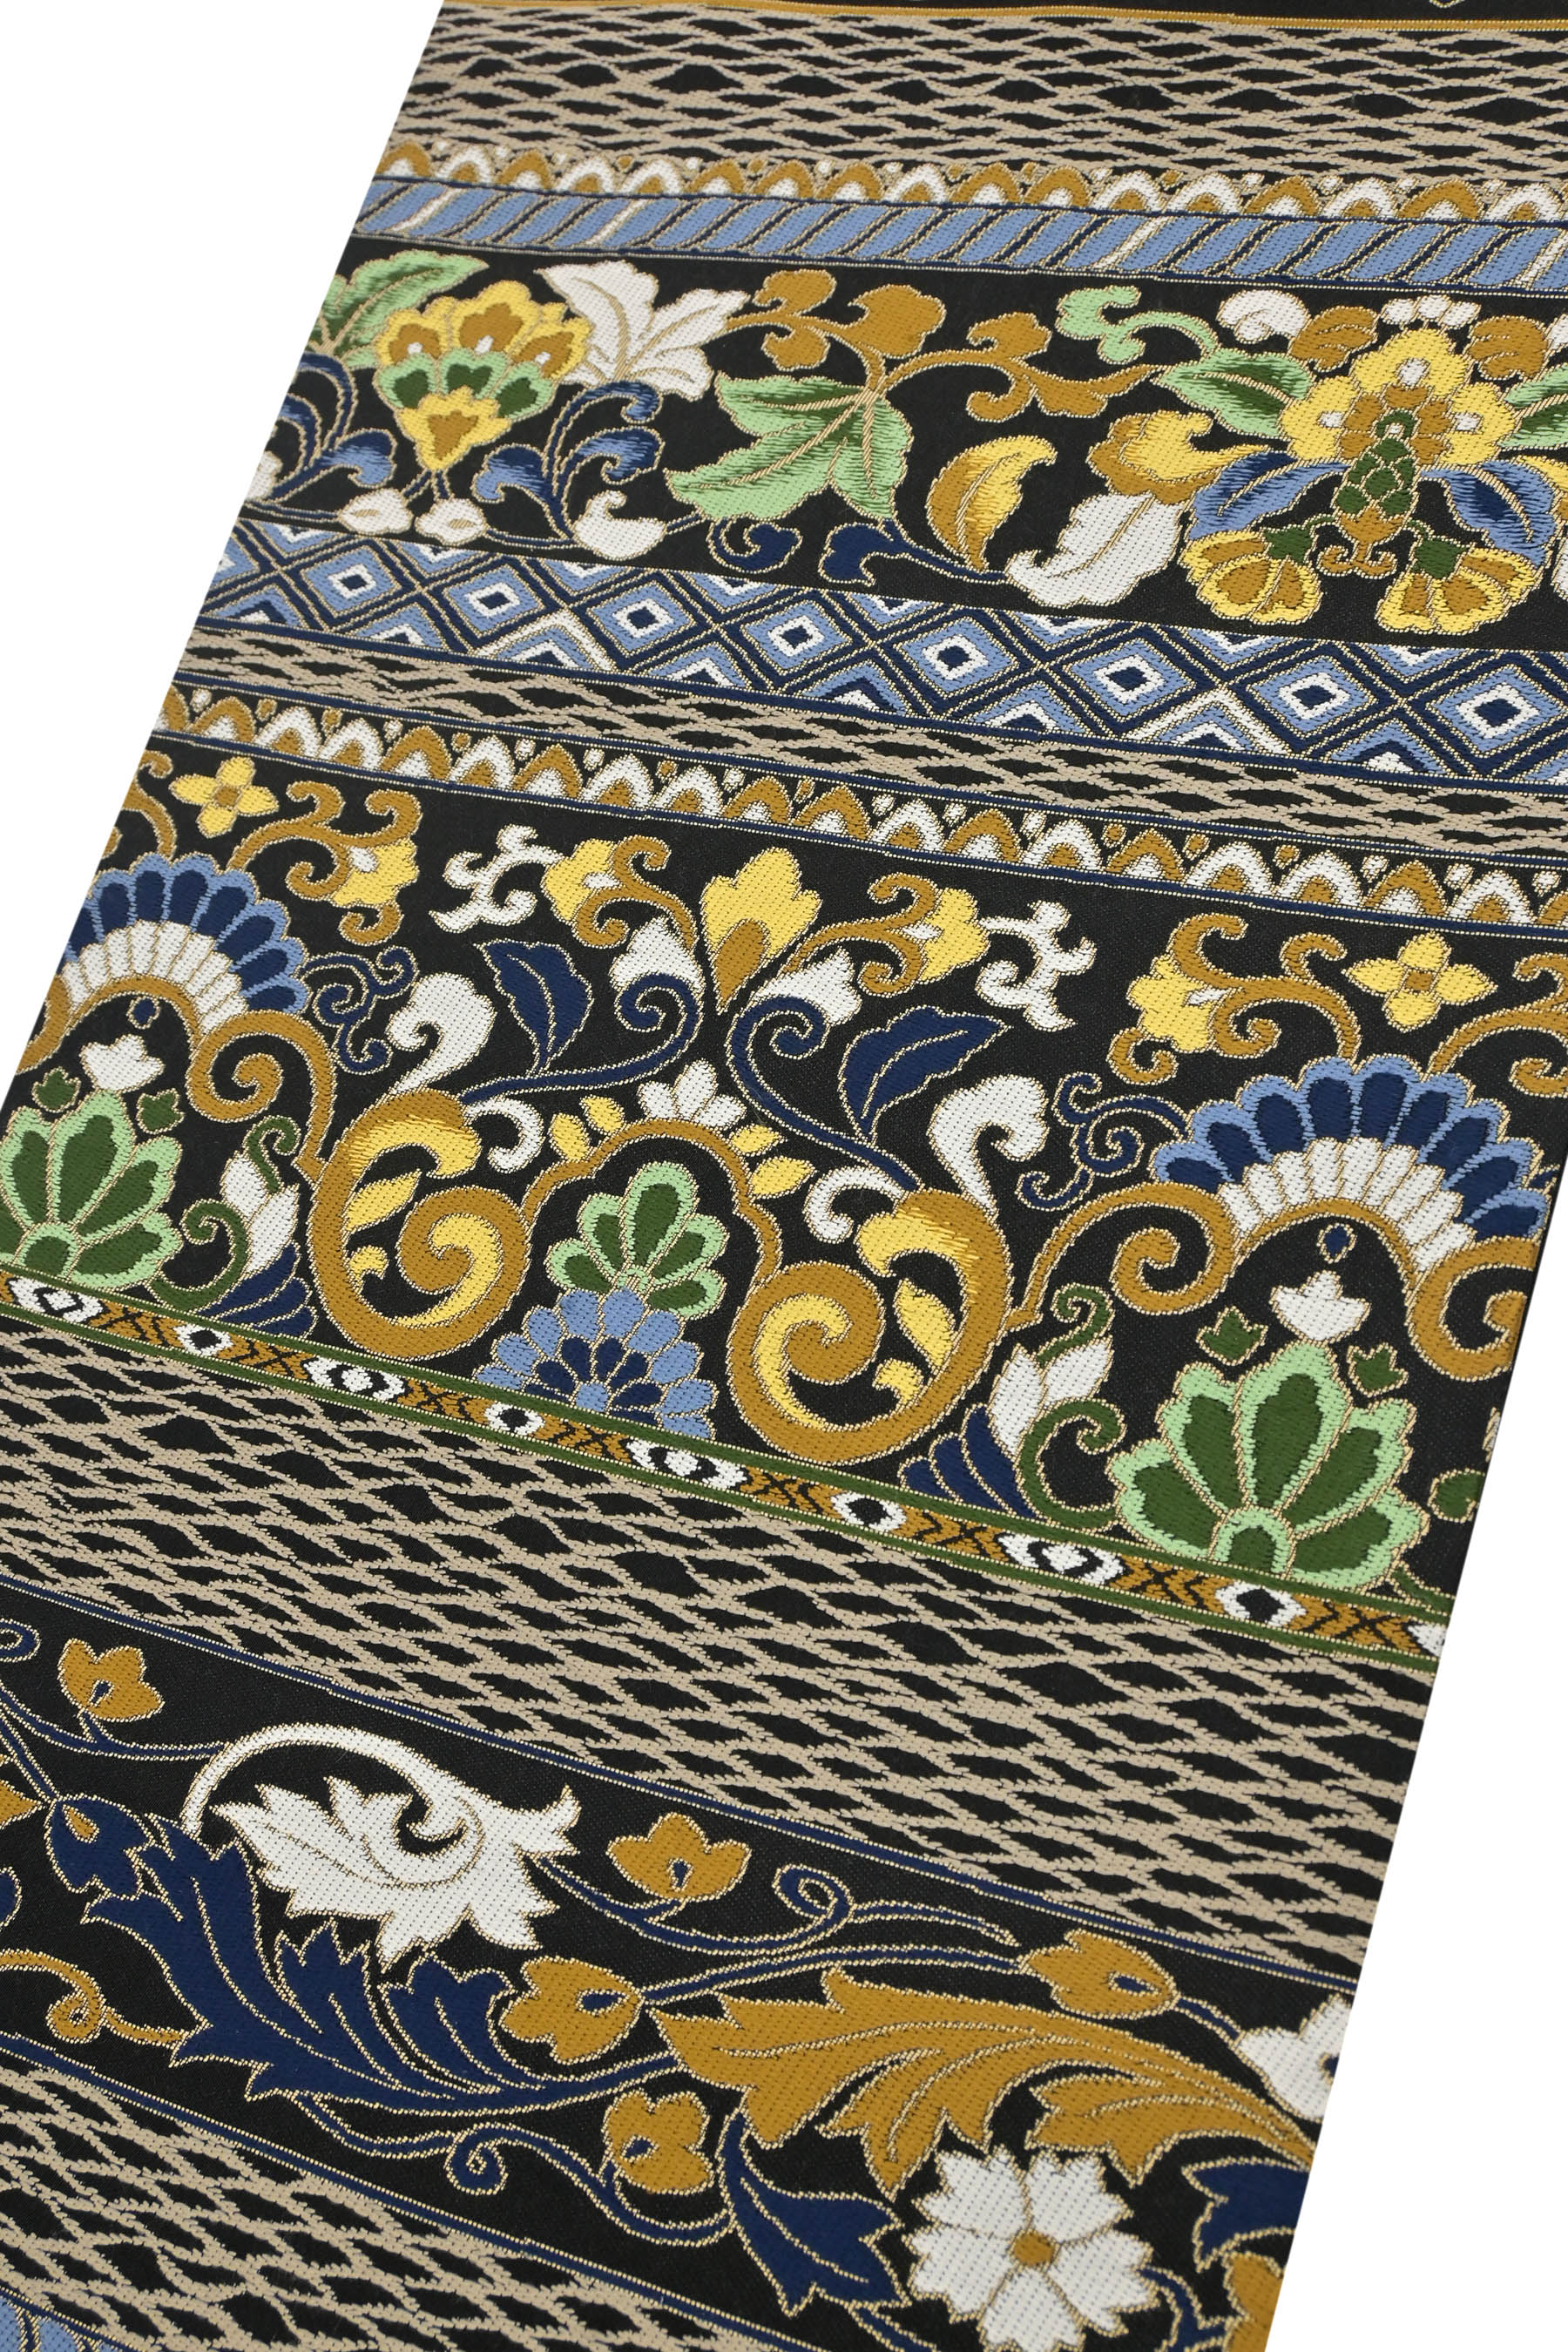 独創的 からし色に、石庭の柄の名古屋帯 着物 着物・浴衣 - tomdoun